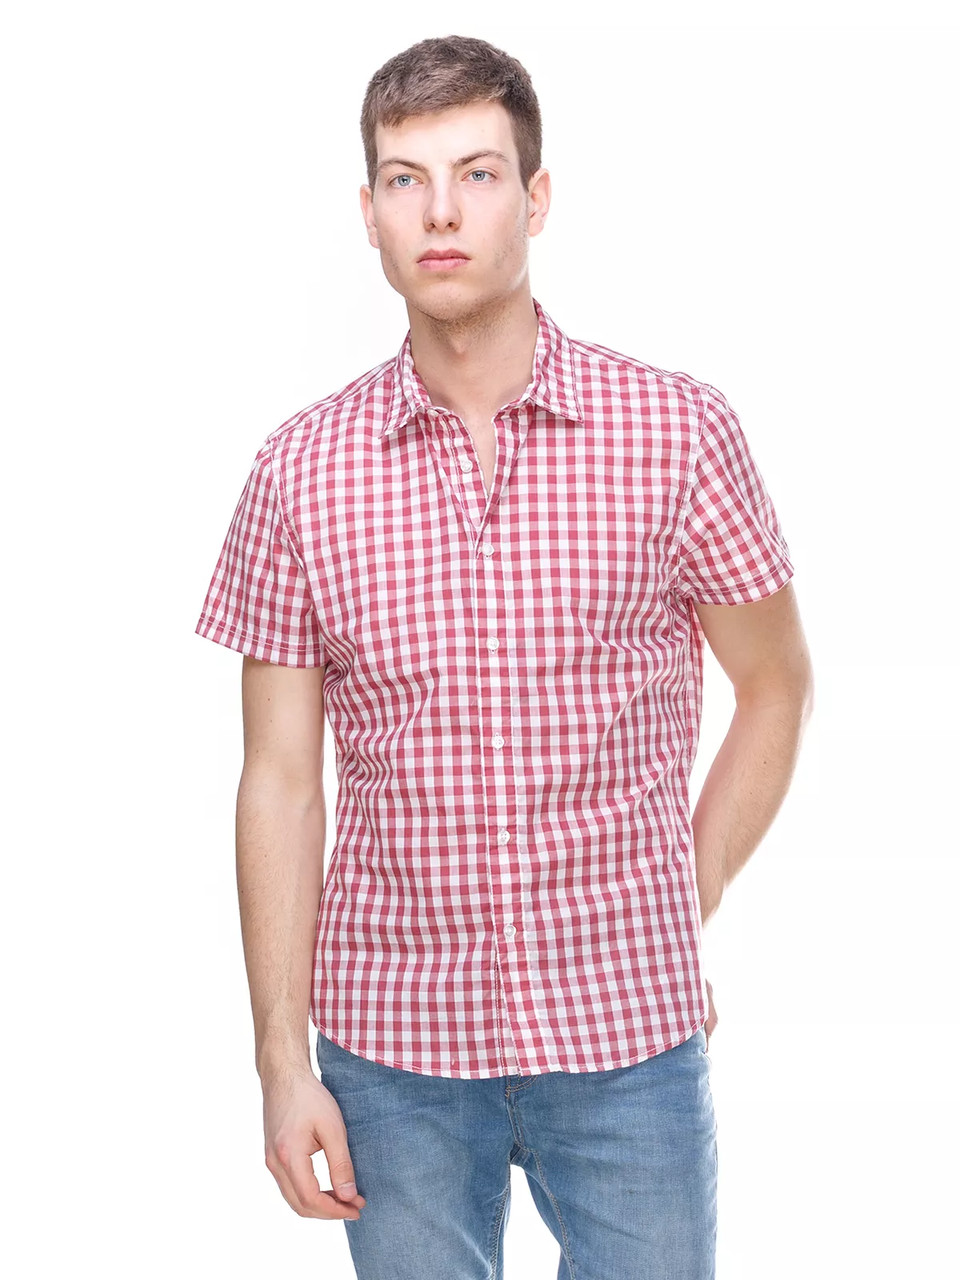 Сорочка з коротким рукавом чоловіча C&A (розмір М) клітинка червона з білим